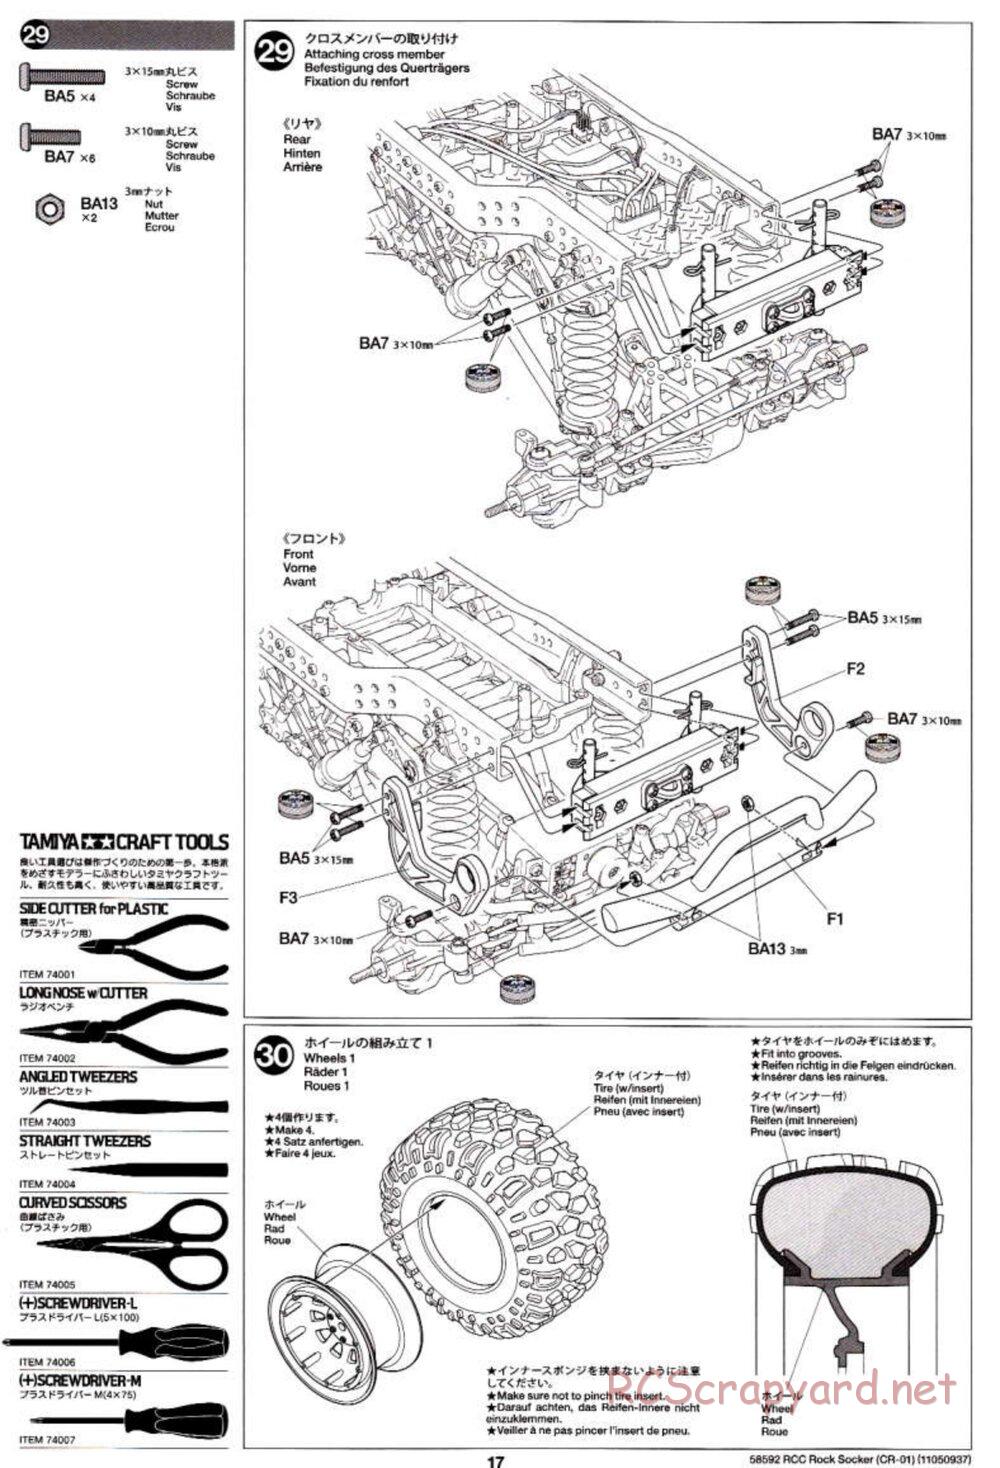 Tamiya - Rock Socker - CR-01 Chassis - Manual - Page 17